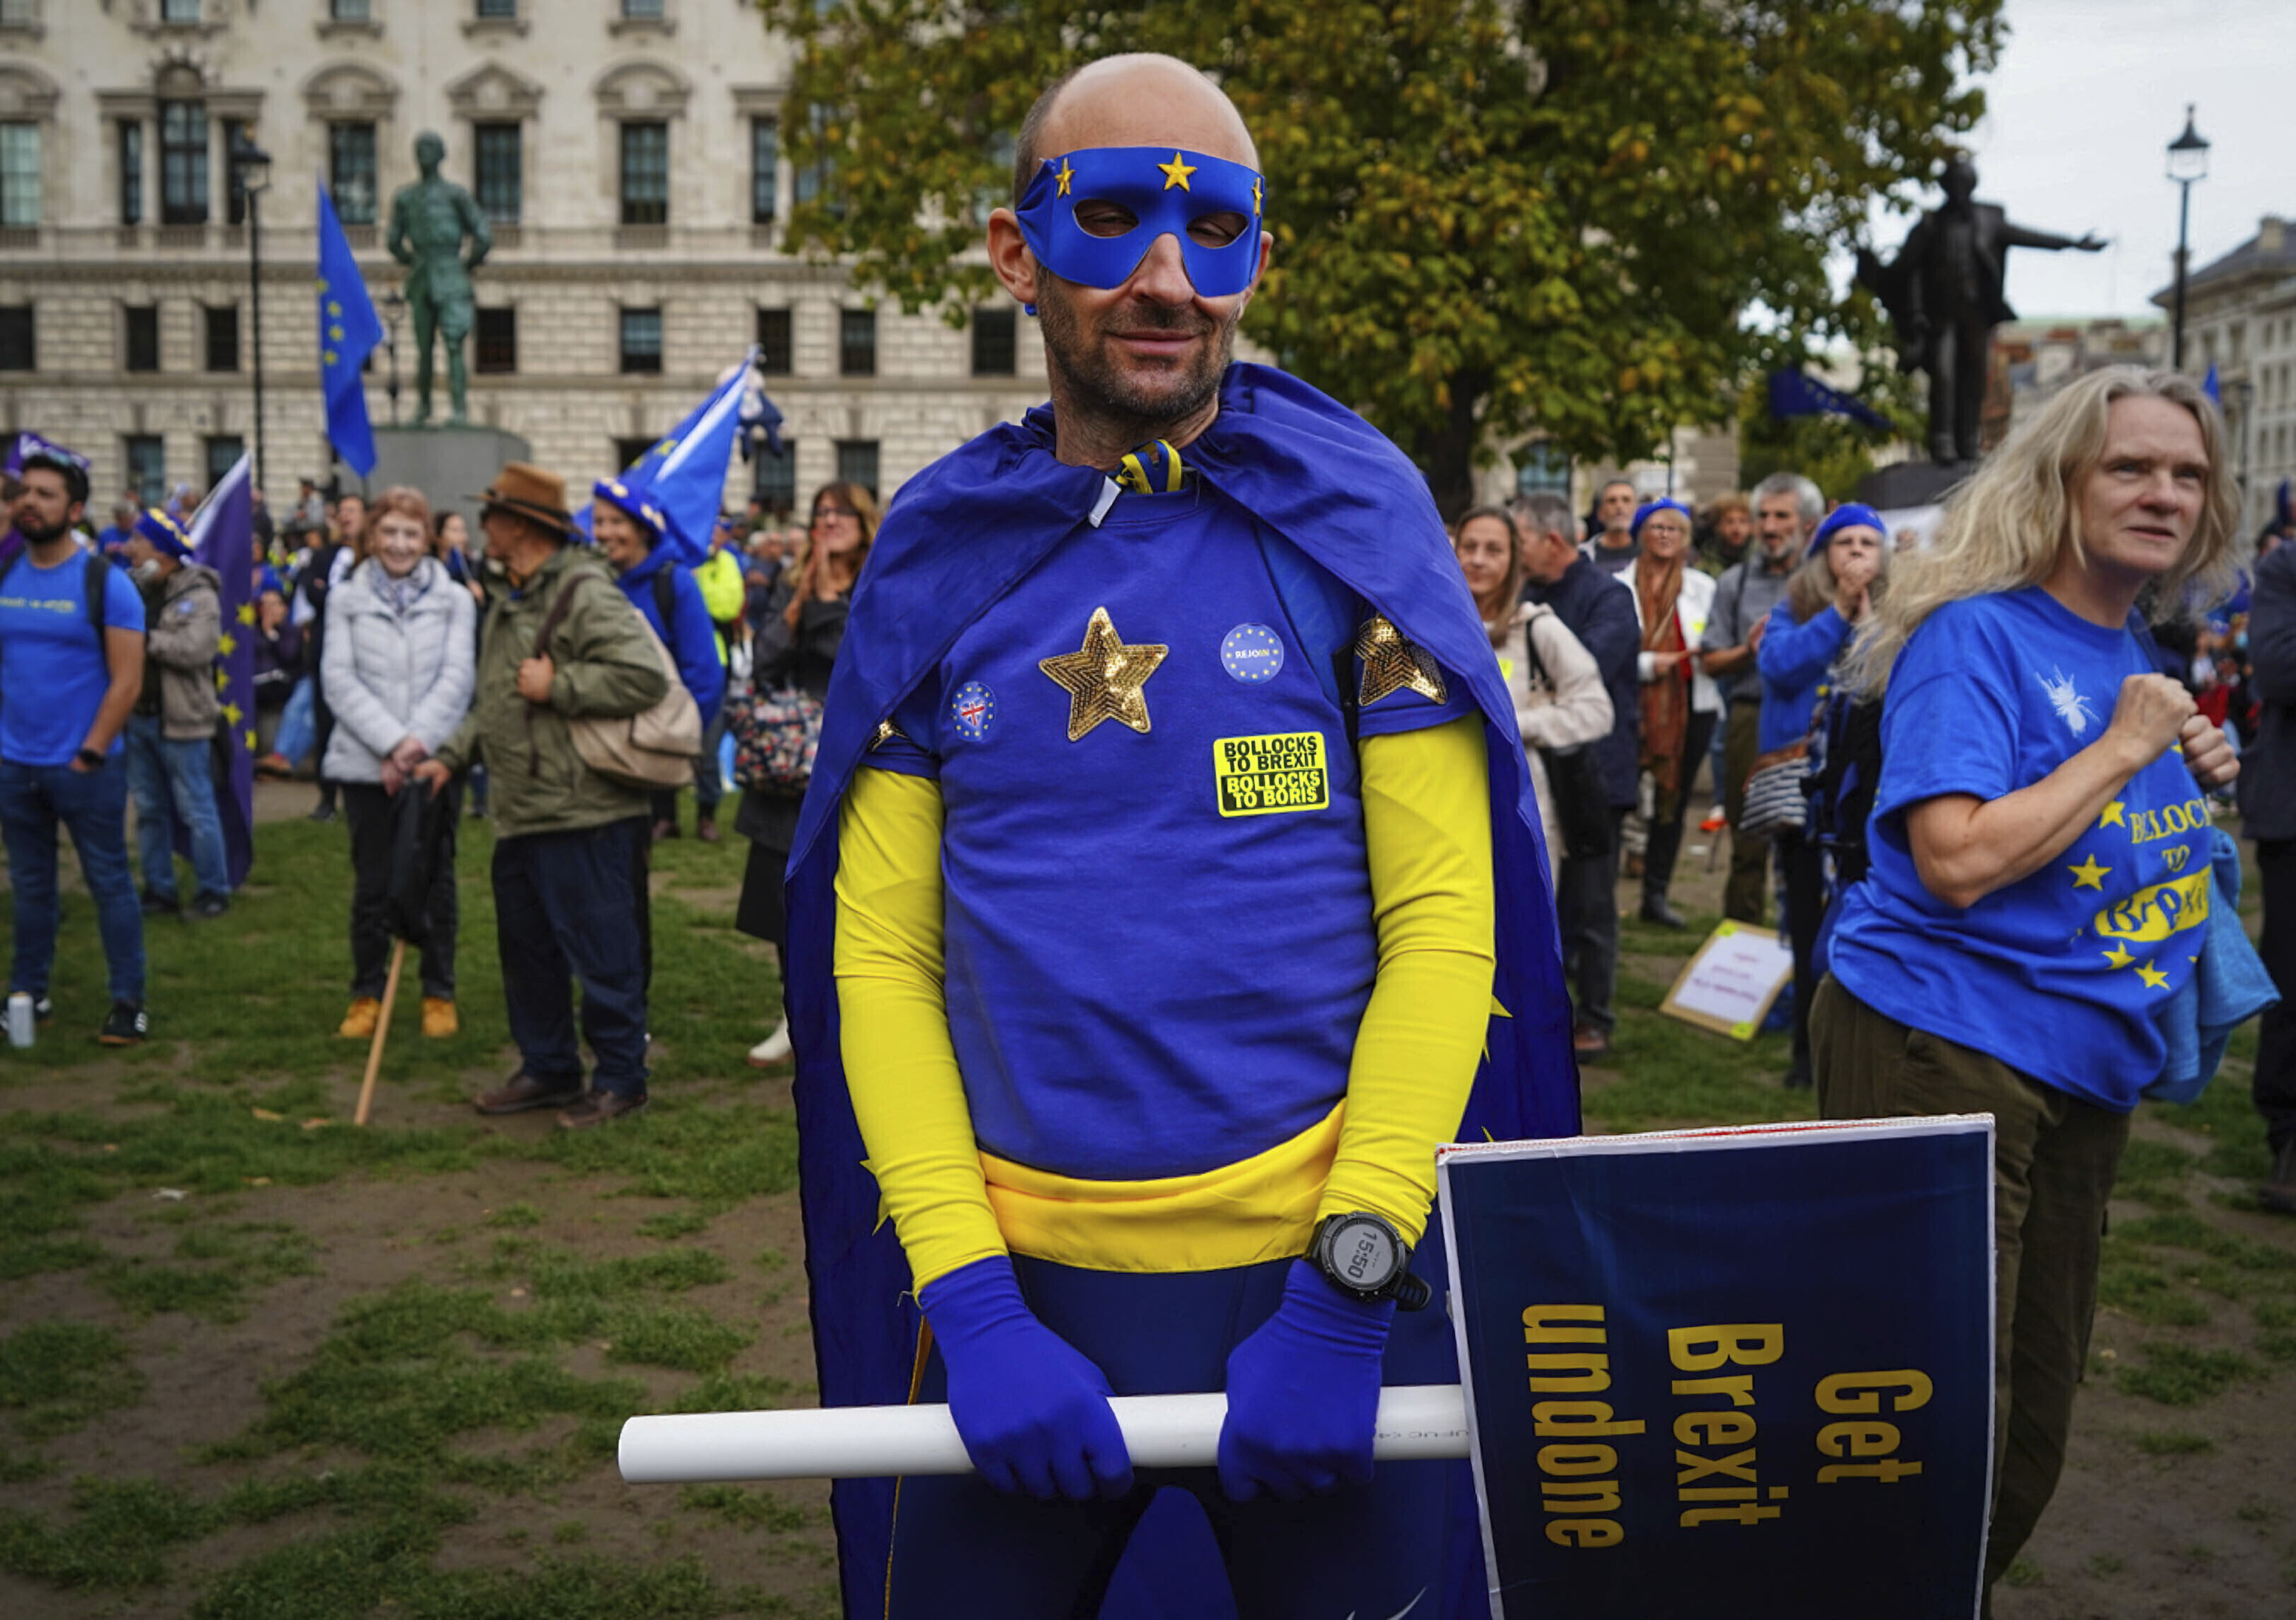 Un participante de la reciente manifestación anti-Brexit celebrada en Londres.